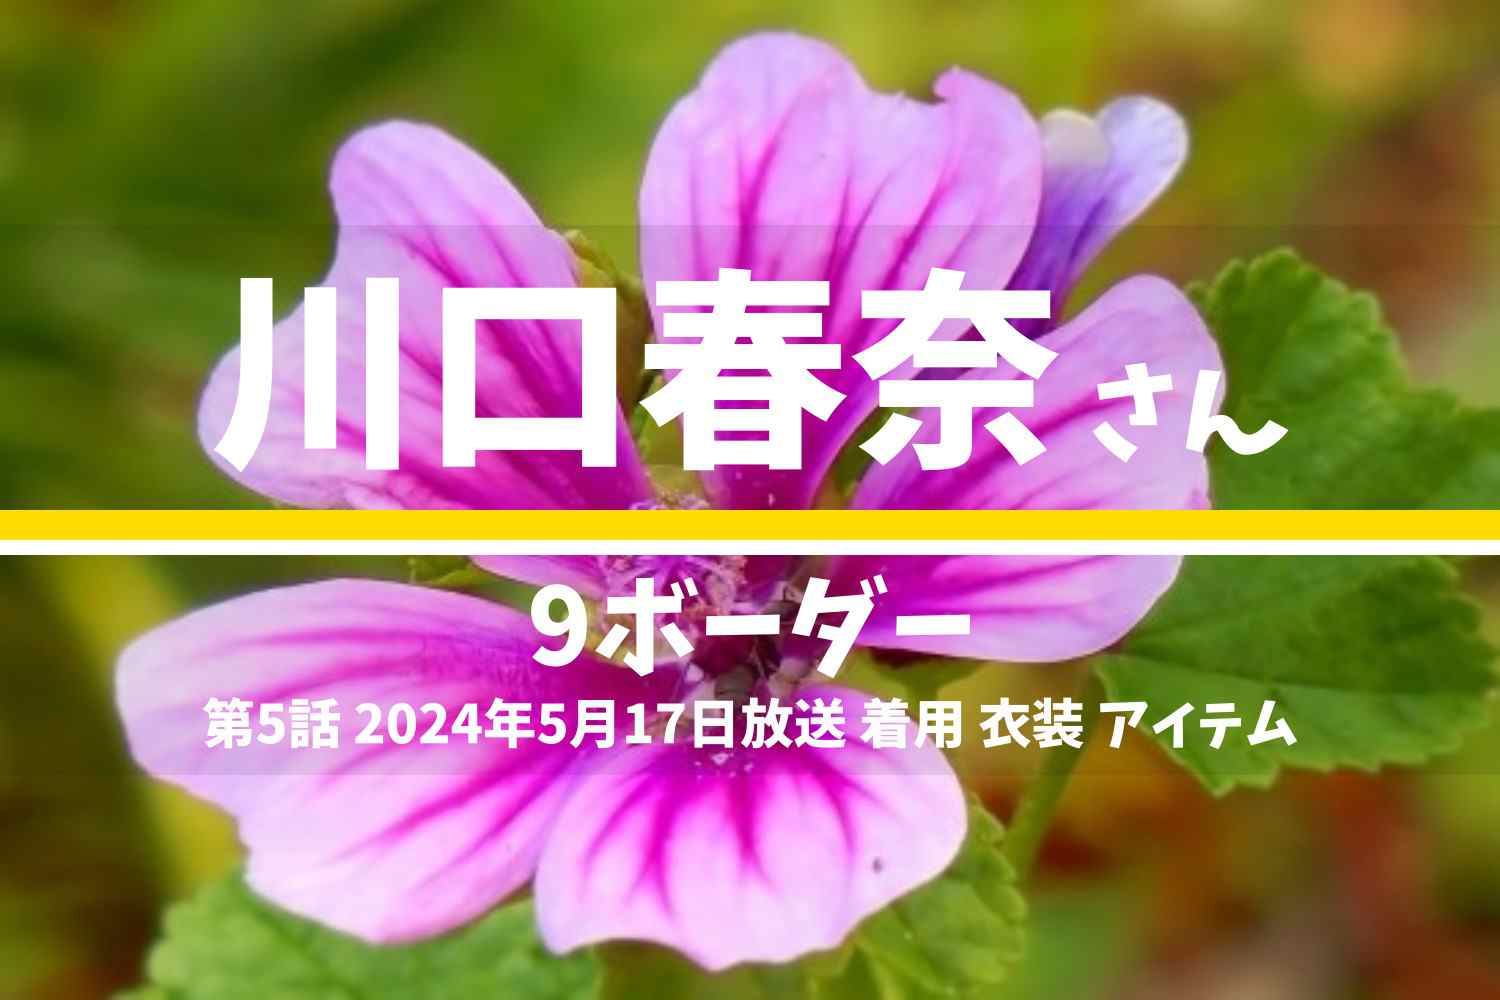 9ボーダー 川口春奈さん テレビドラマ 衣装 2024年5月17日放送